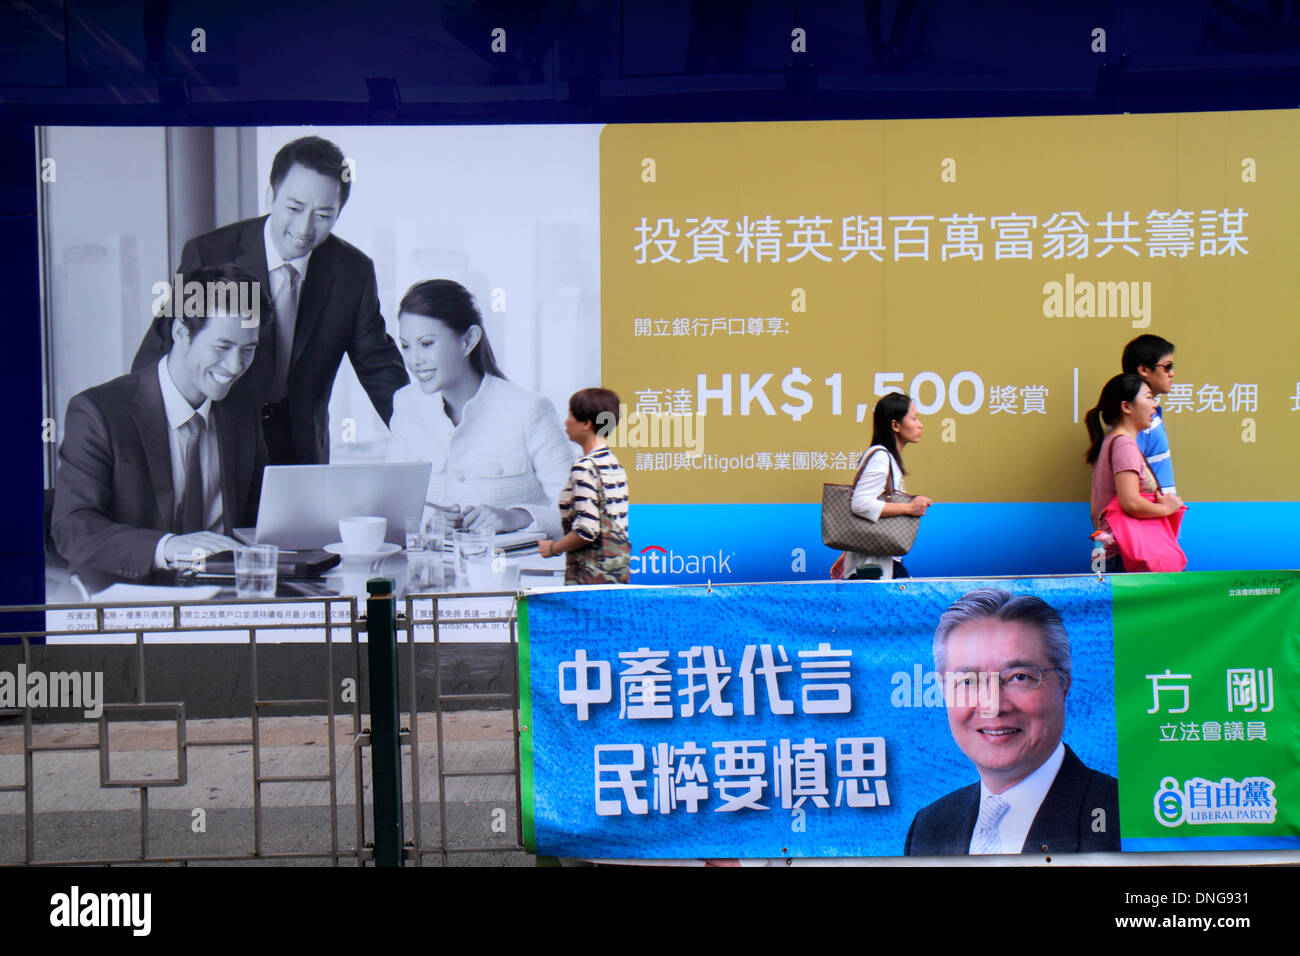 Hong Kong China,HK,Asia,Chinese,Oriental,Kowloon,Tsim Sha Tsui,Nathan Road,political poster,banner,campaign,Liberal Party,citibank,billboard,advertise Stock Photo